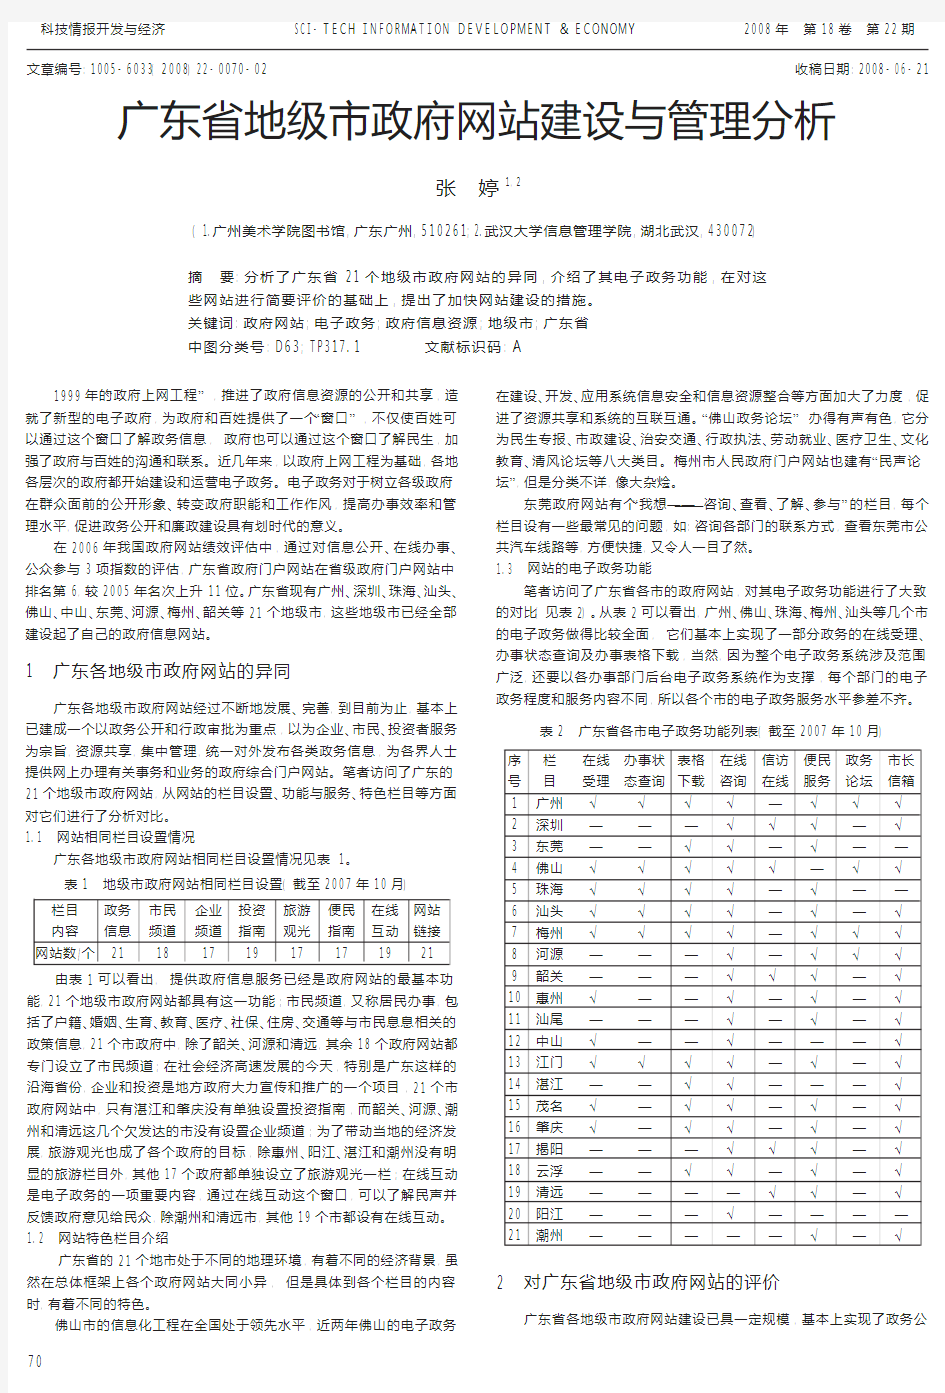 广东省地级市政府网站建设与管理分析